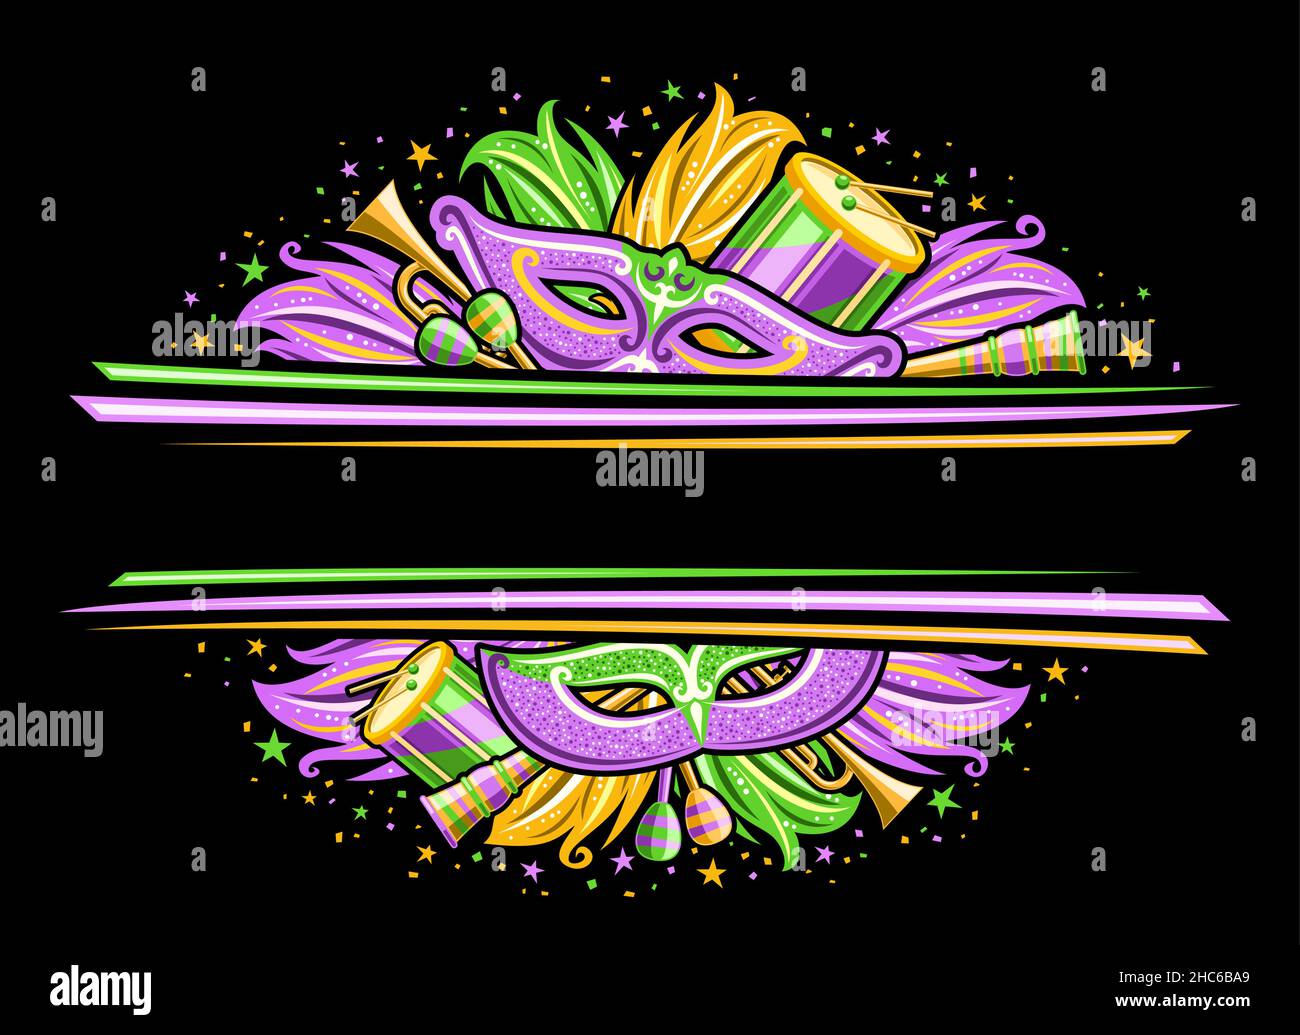 Bordure vectorielle pour le carnaval de Mardi gras avec espace de copie, invitation horizontale avec illustration des symboles de la marine, des instruments de musique, violet et gr Illustration de Vecteur